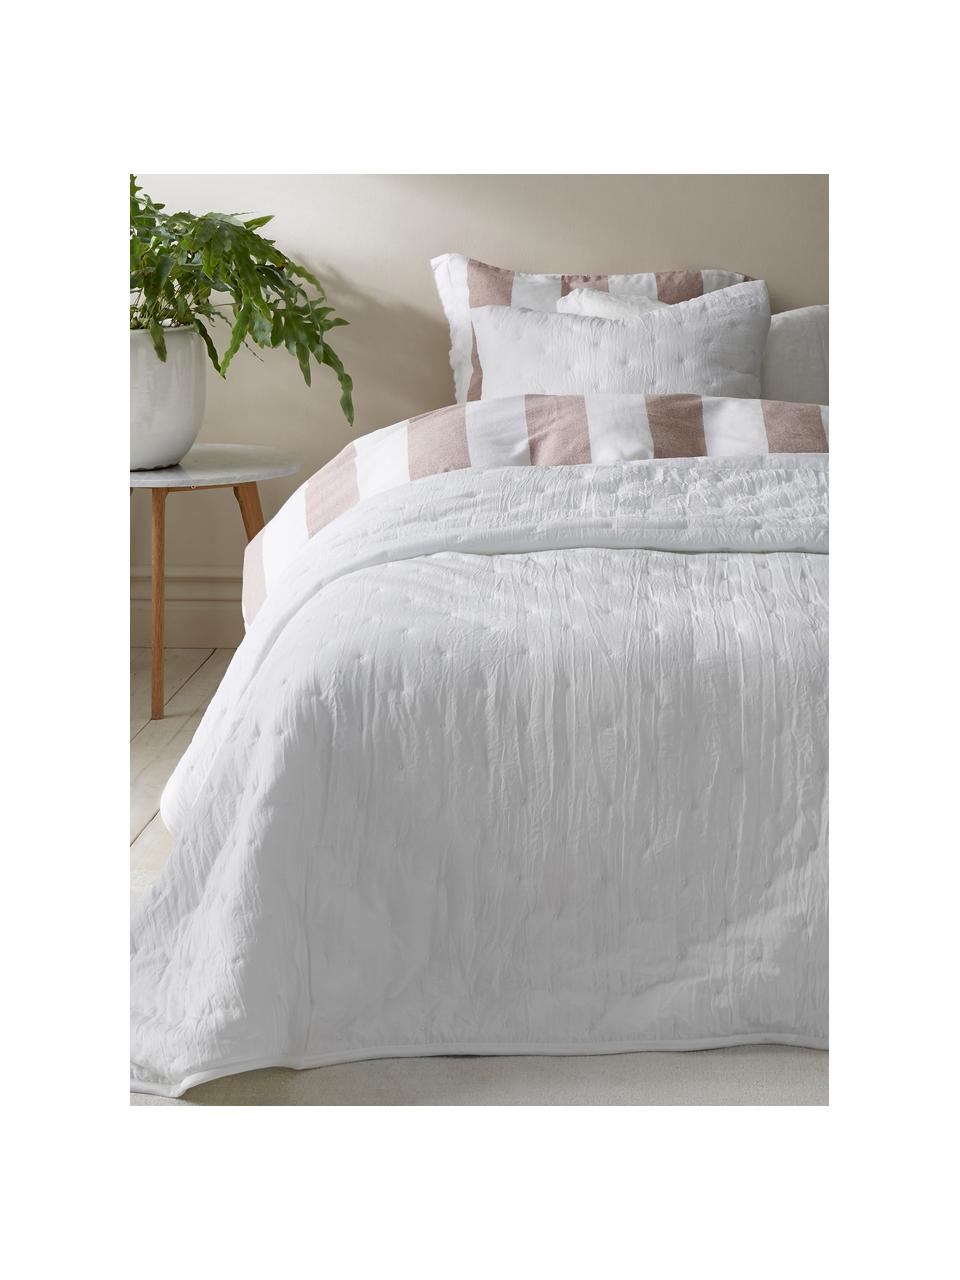 Gesteppte Tagesdecke Wida in Weiß, 100% Polyester, Weiß, B 150 x L 250 cm (für Betten bis 100 x 200)